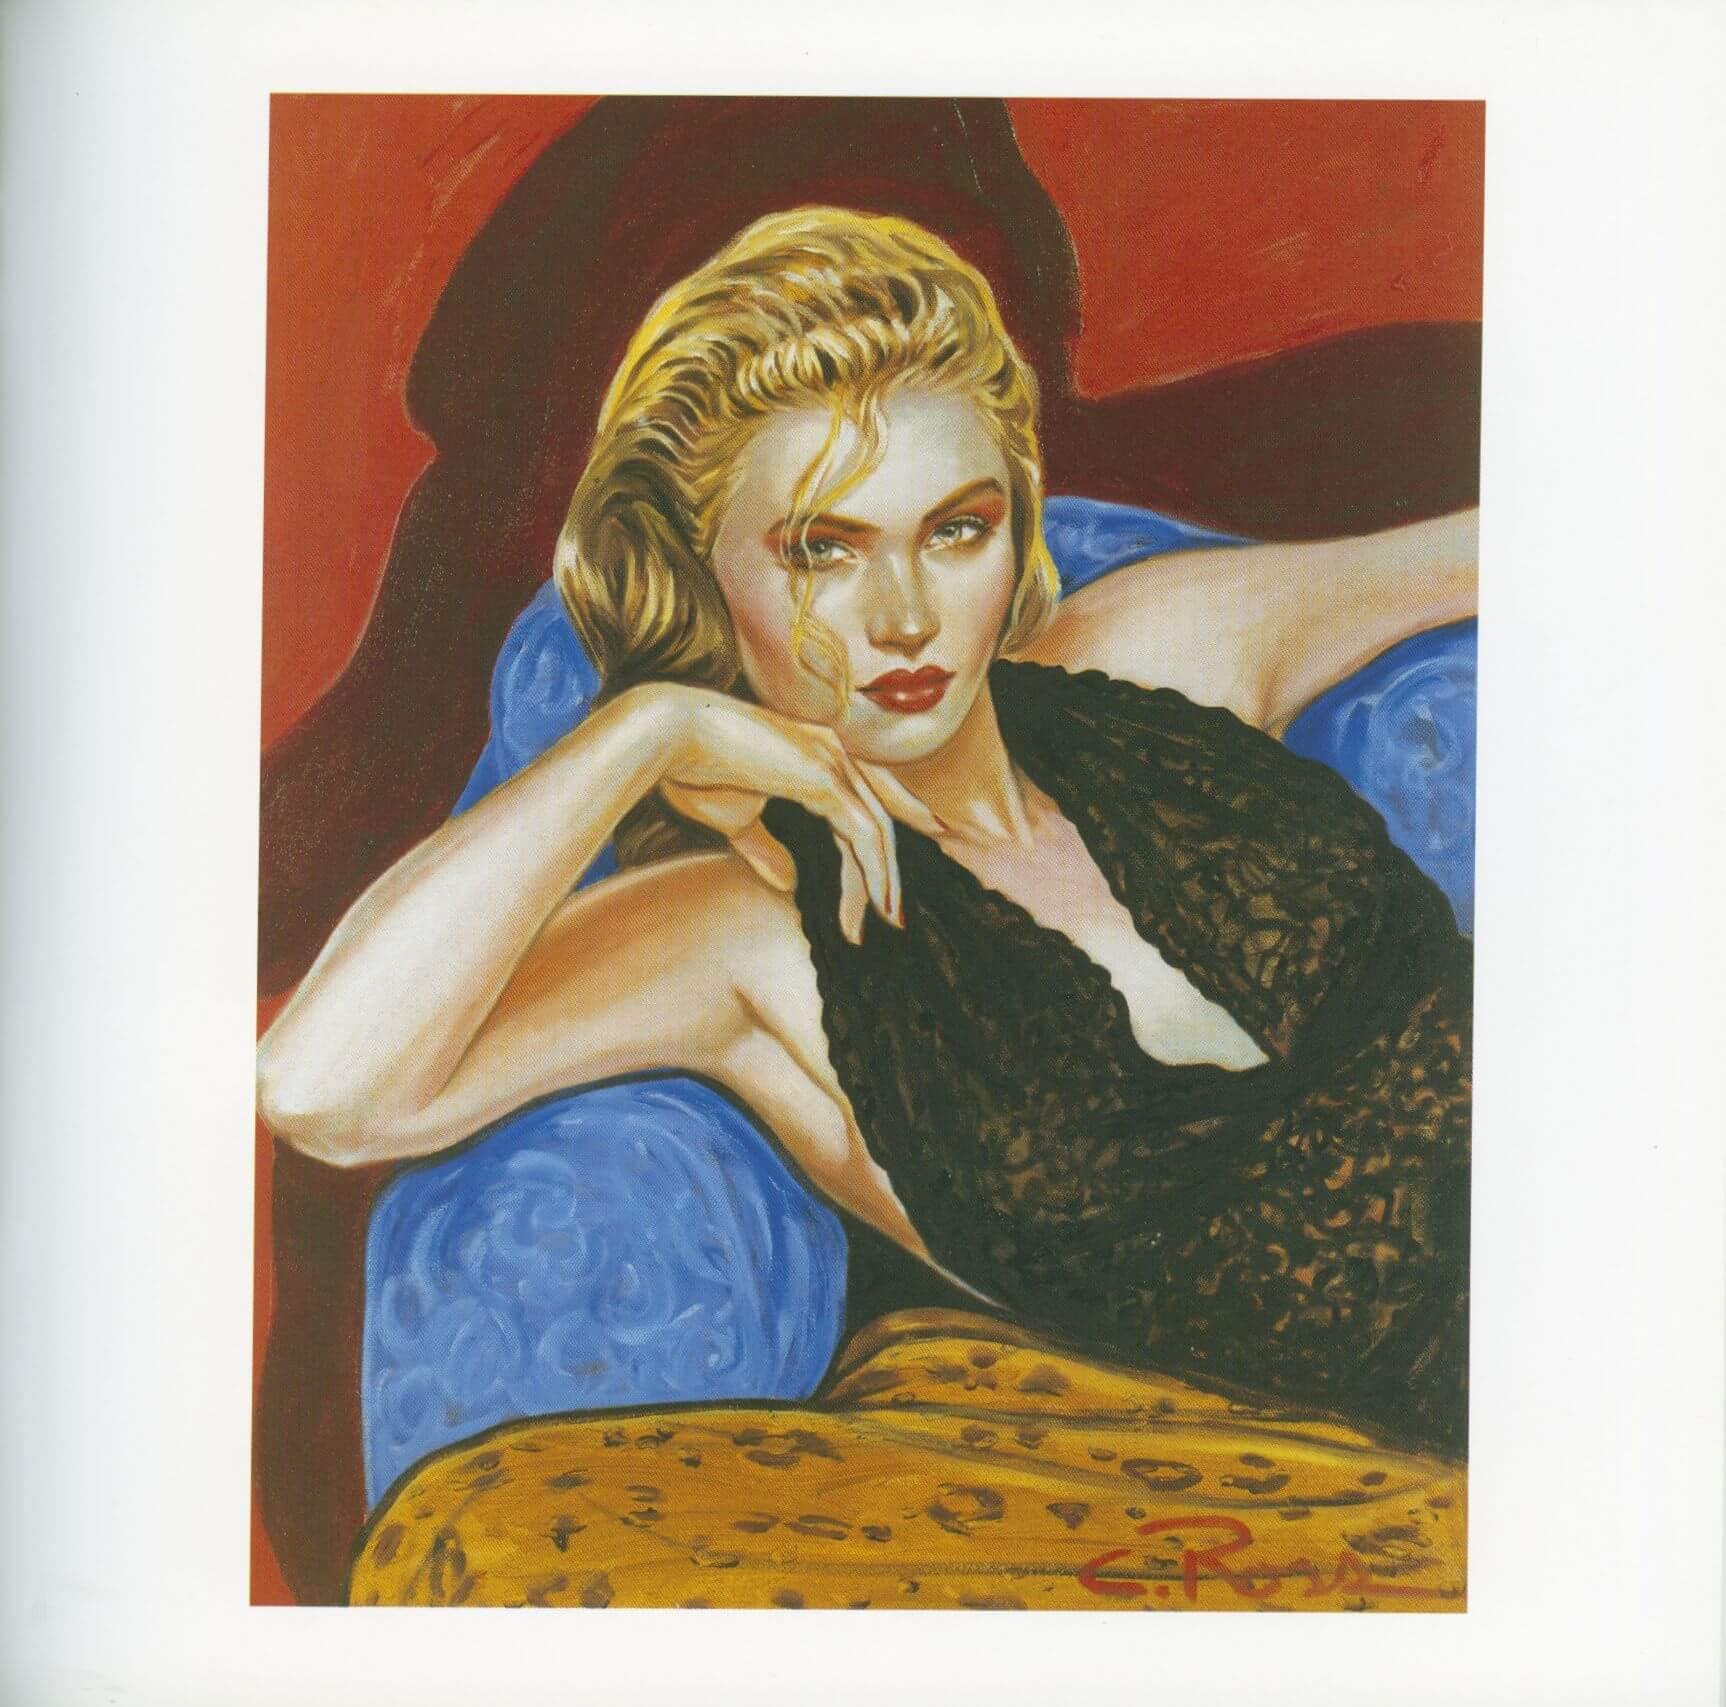 Colleen Ross Fine Art Gallery Publication Colleen Ross Artist Book, 1992